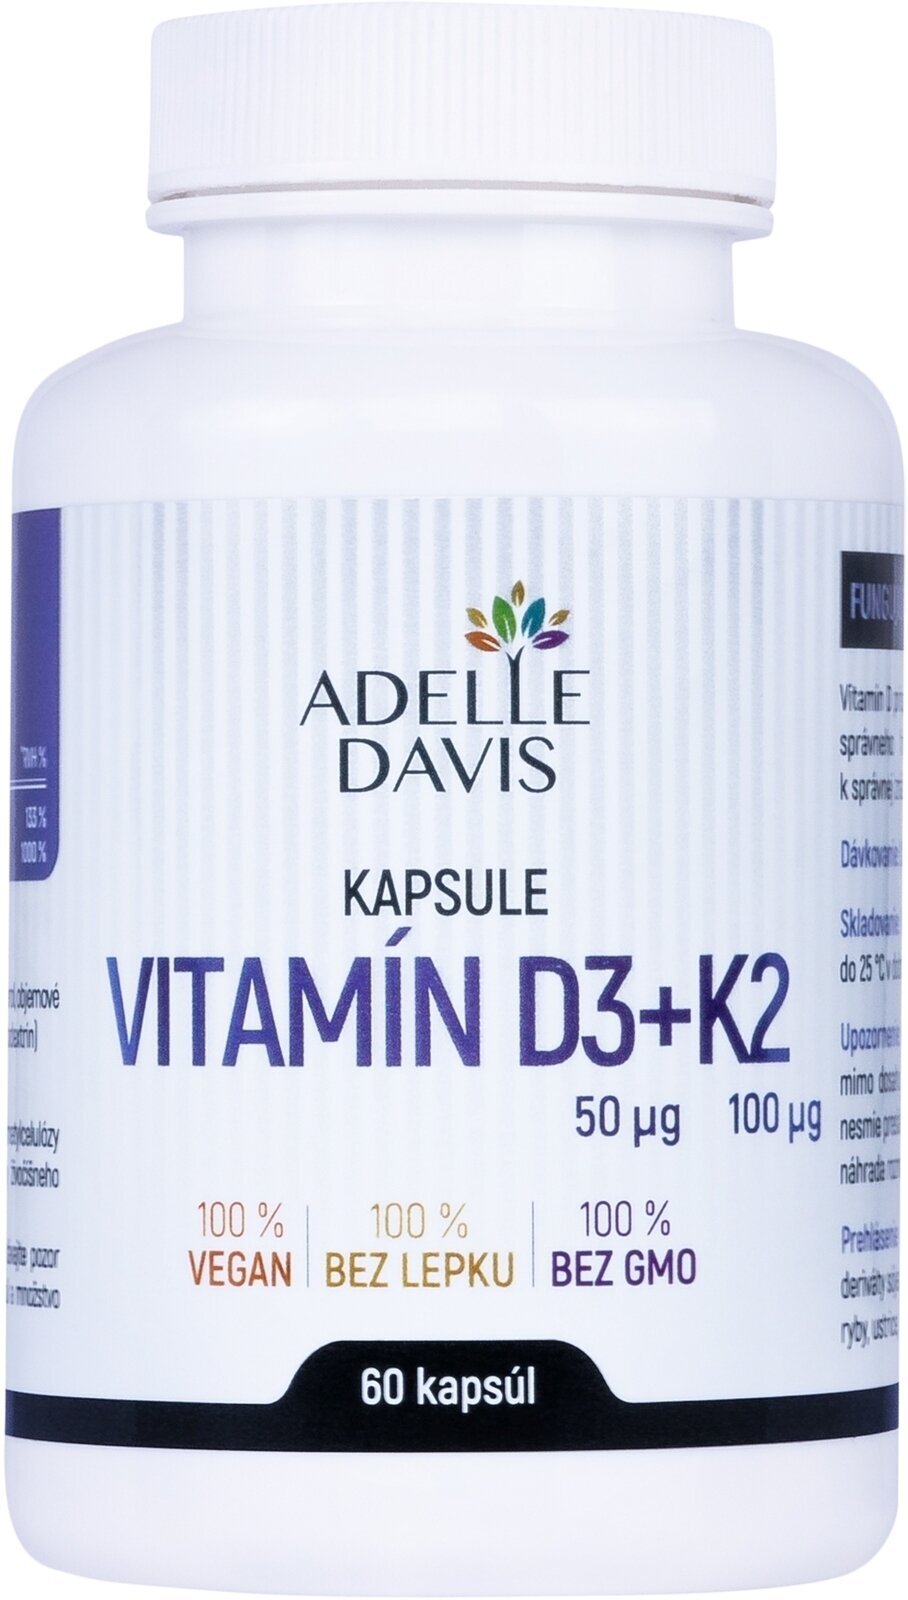 Vitamín D Adelle Davis Vitamin D3 + K2 60 Capsules Vitamín D